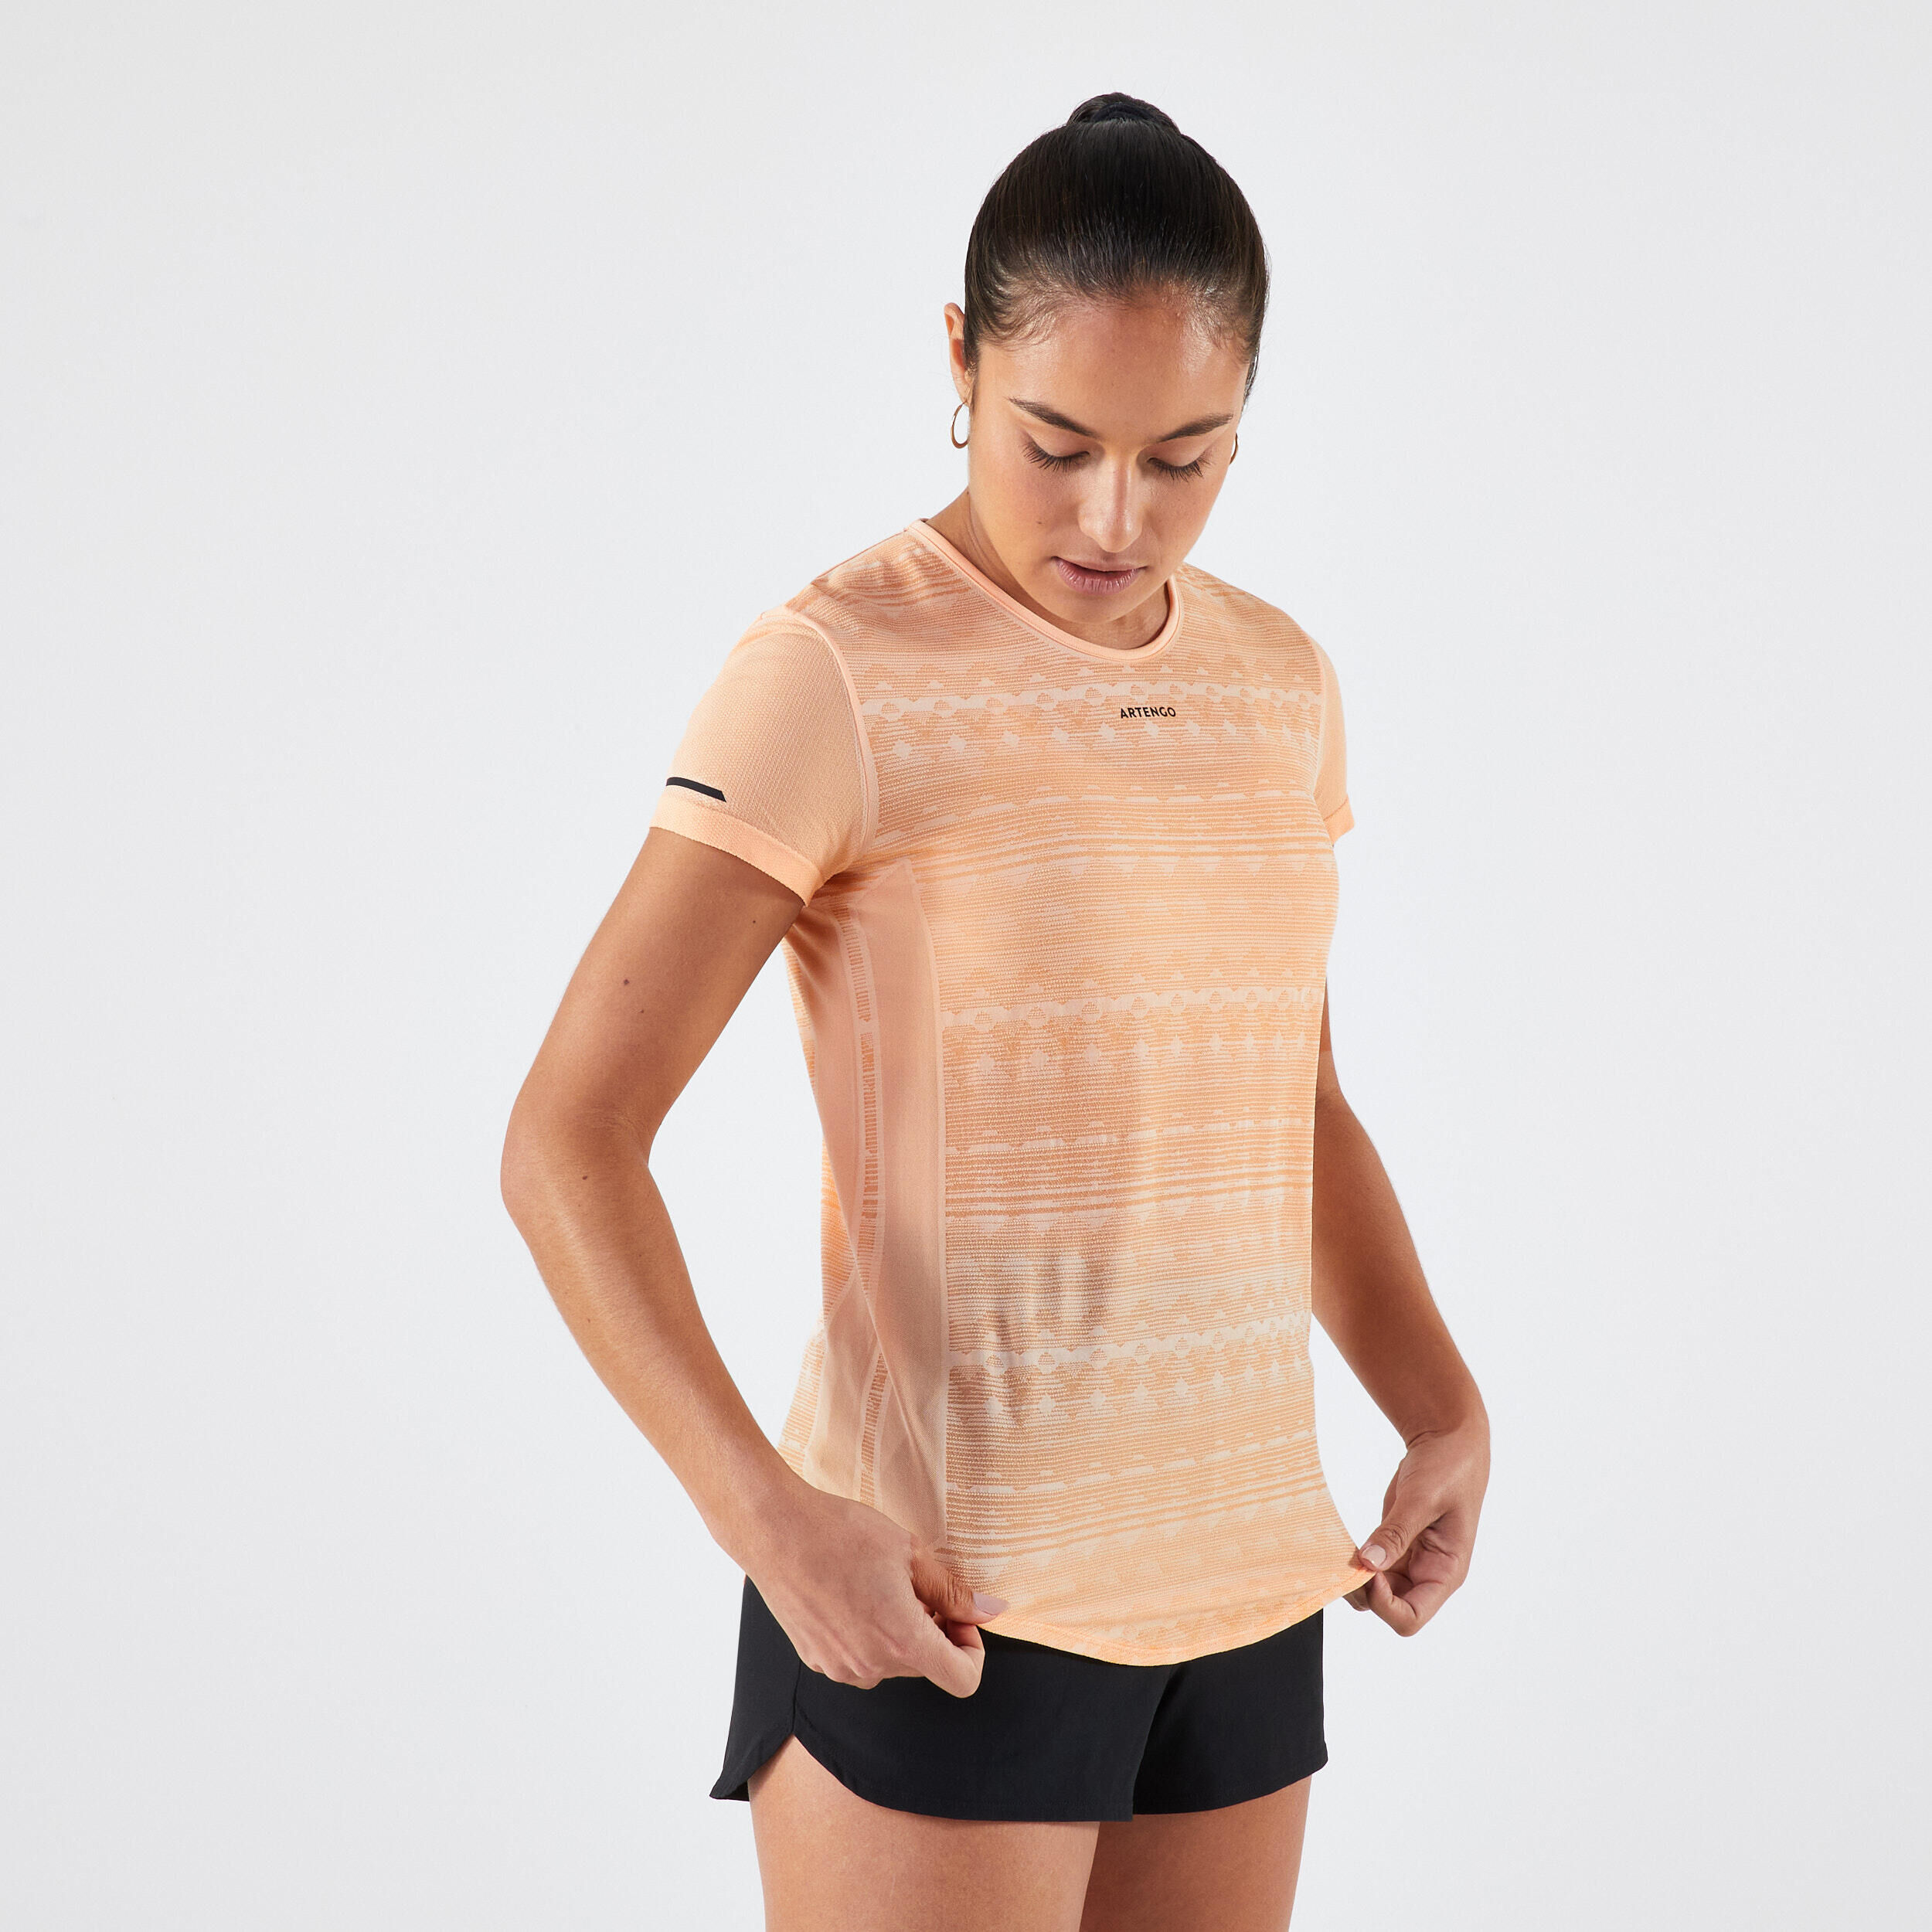 ARTENGO Women's Light Tennis T-Shirt TTS Light - Orange